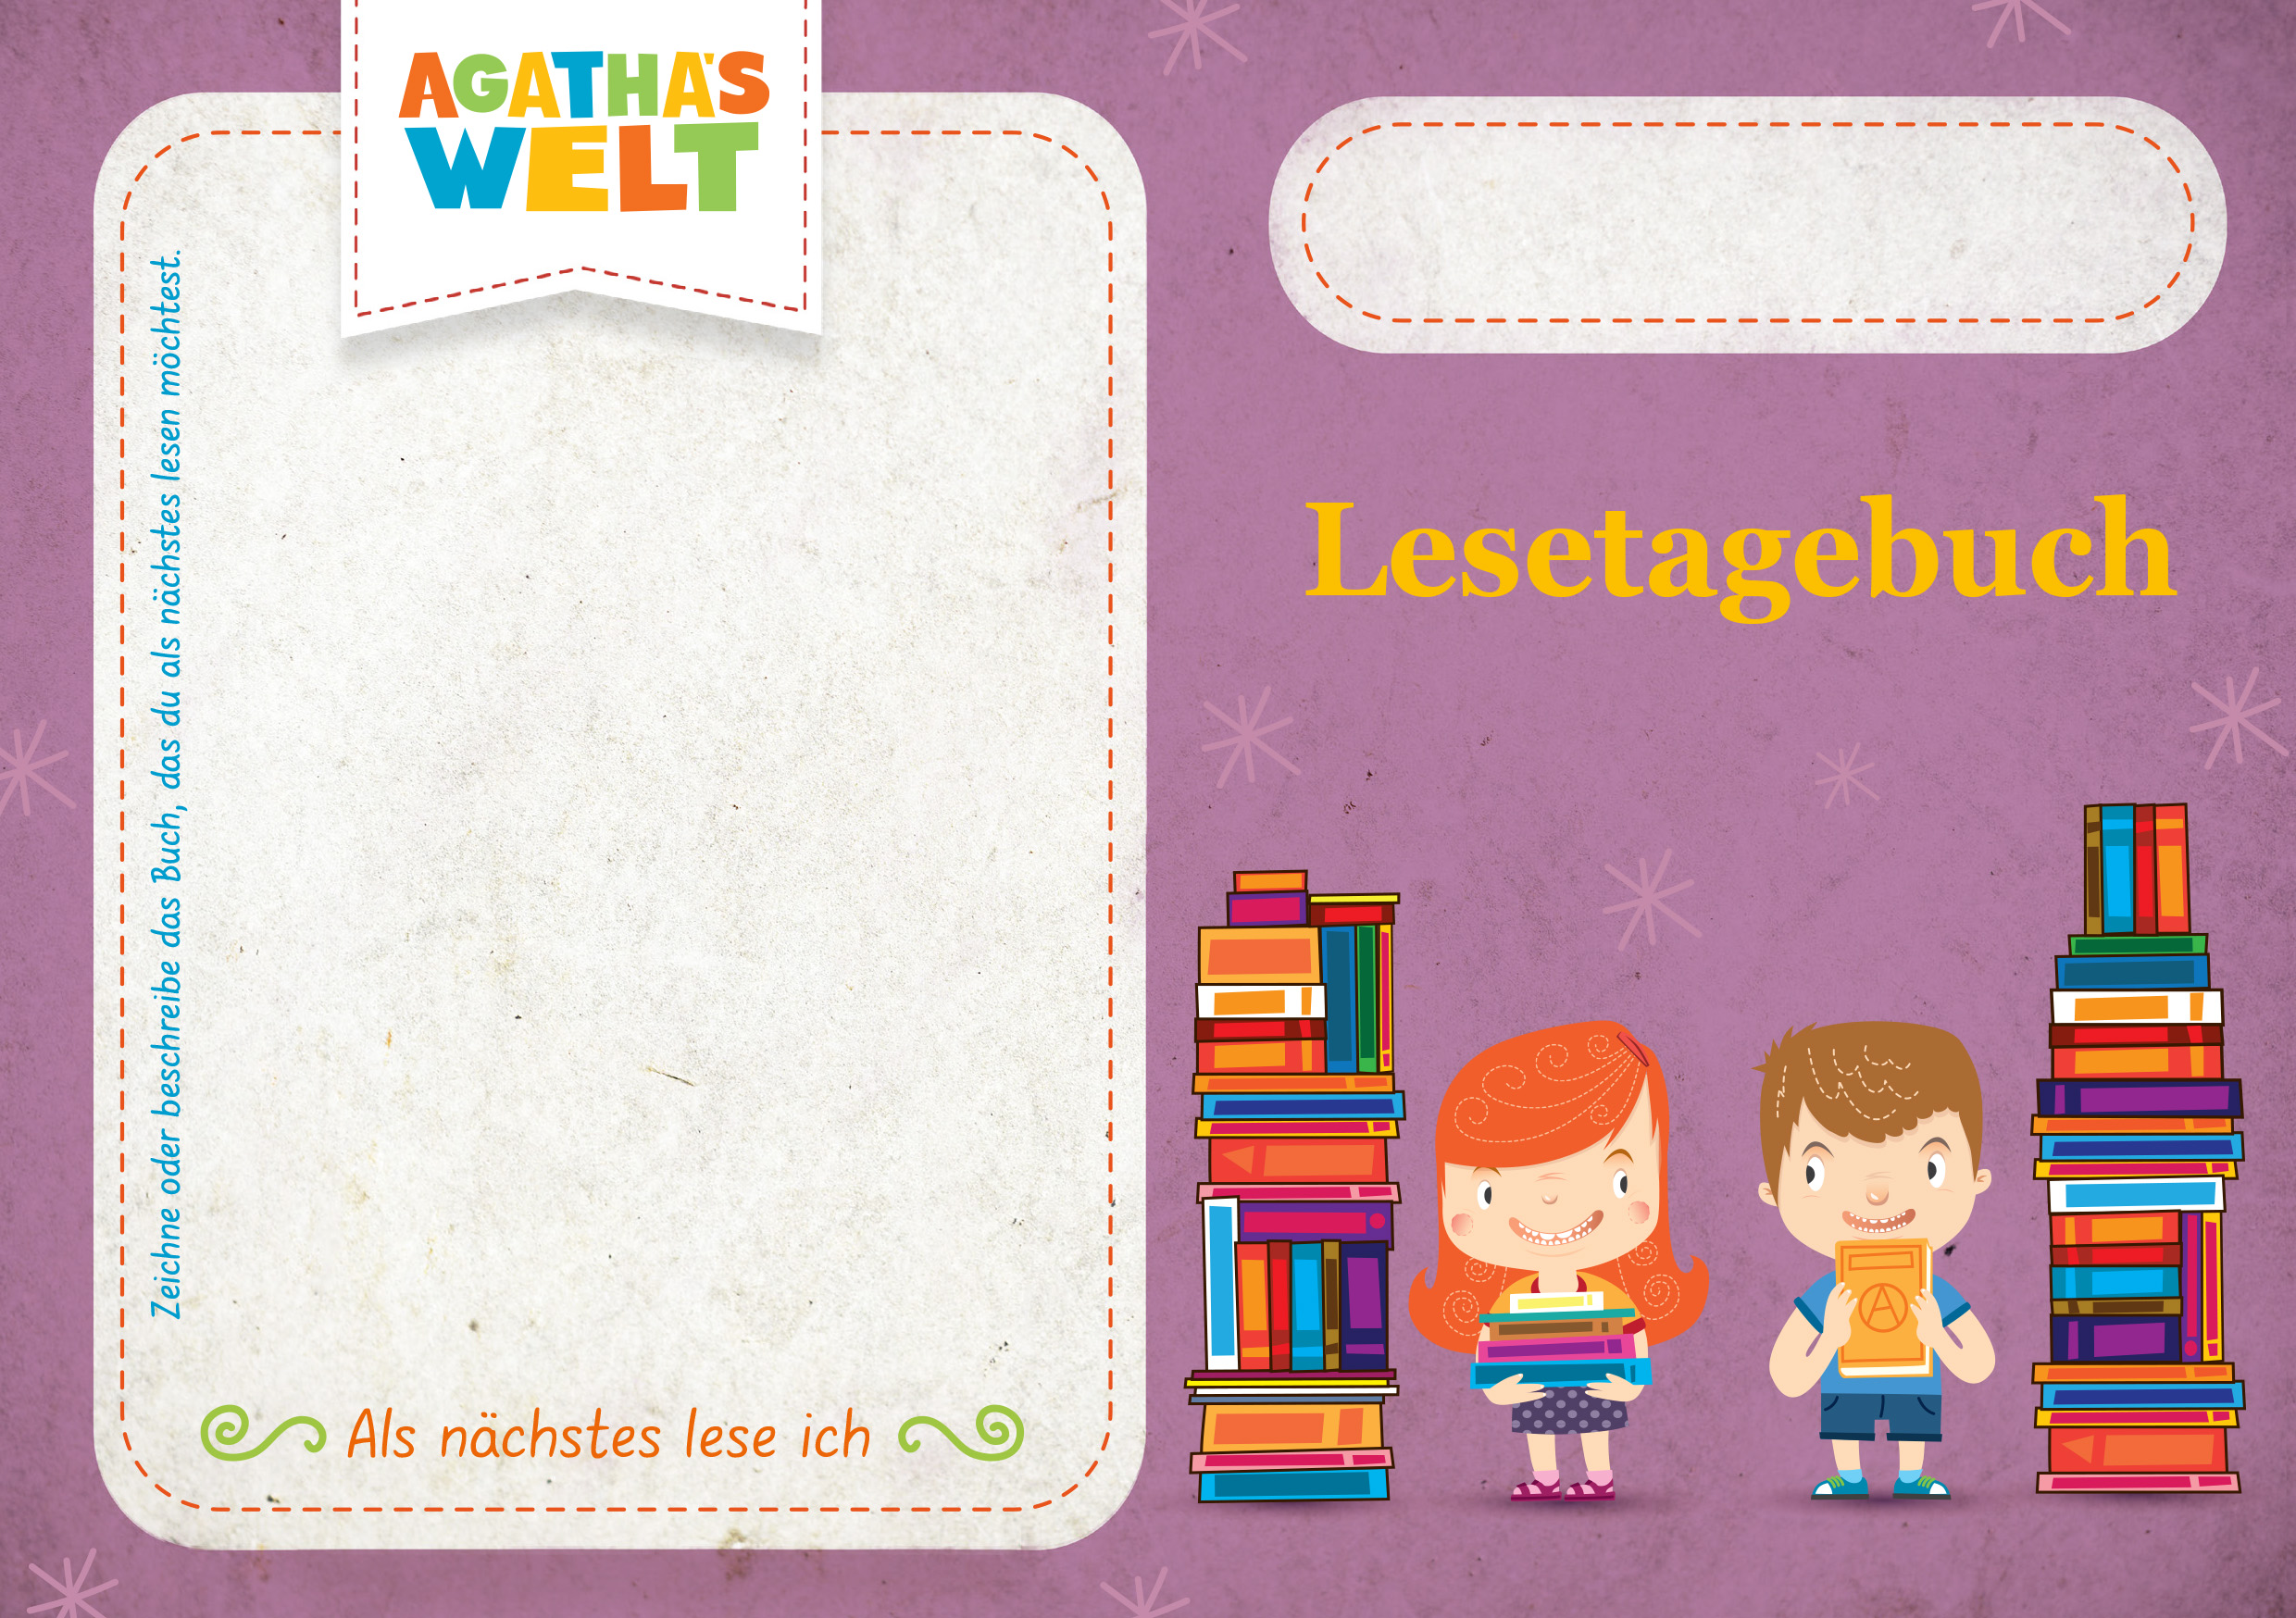 Kostenloser Download - Lesetagebuch, Motiv mit Agatha